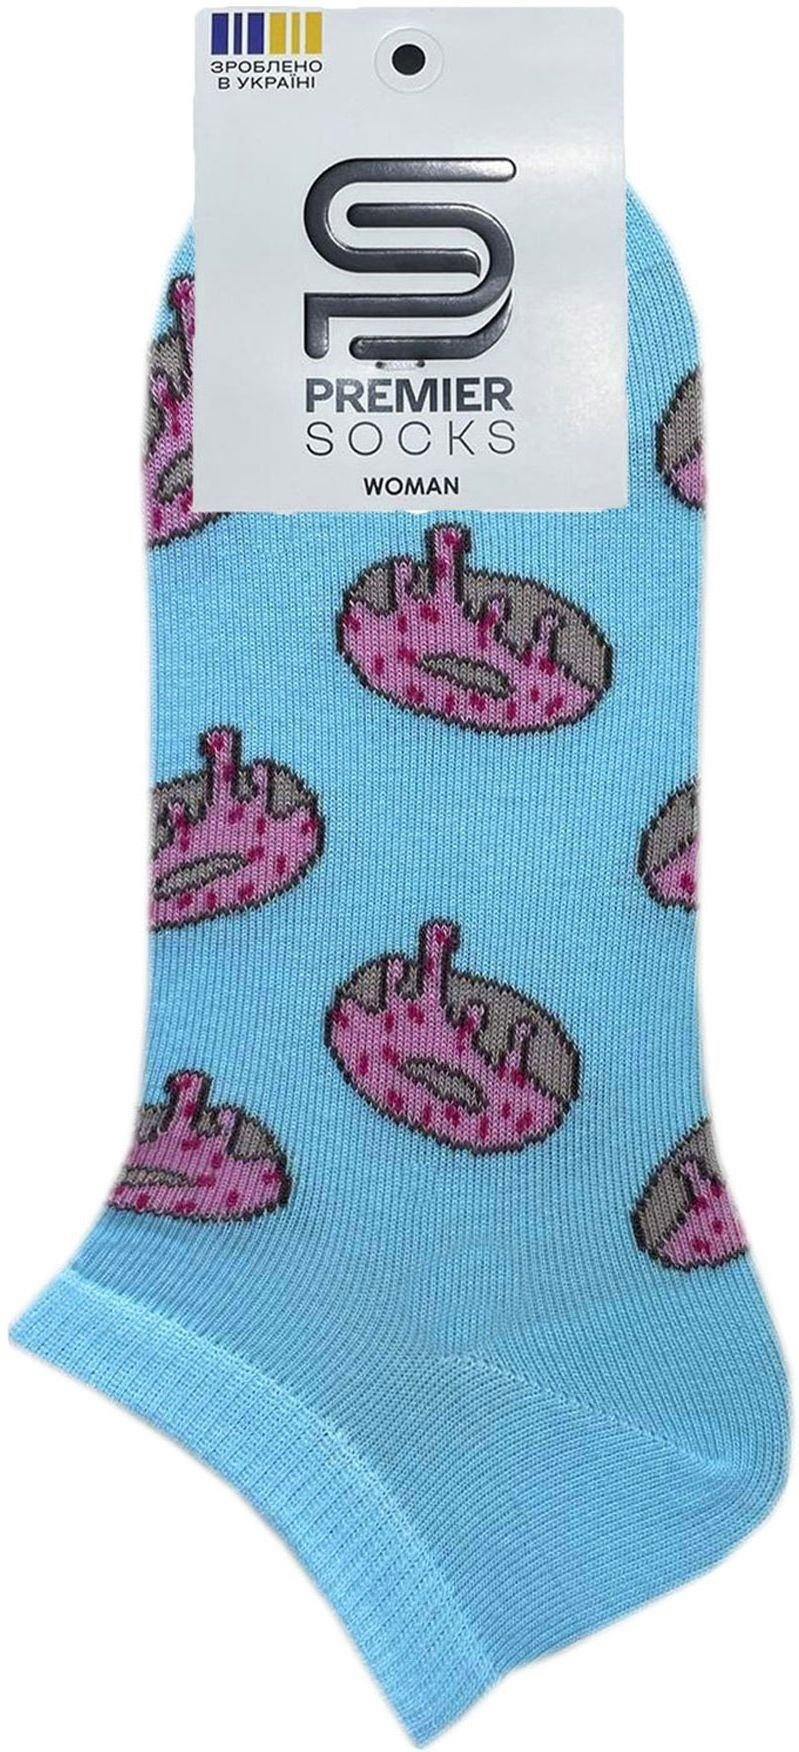 Носки женские Premier Socks 36-40 1 пара голубые с принтом Пончики (4820163318905) фото 2